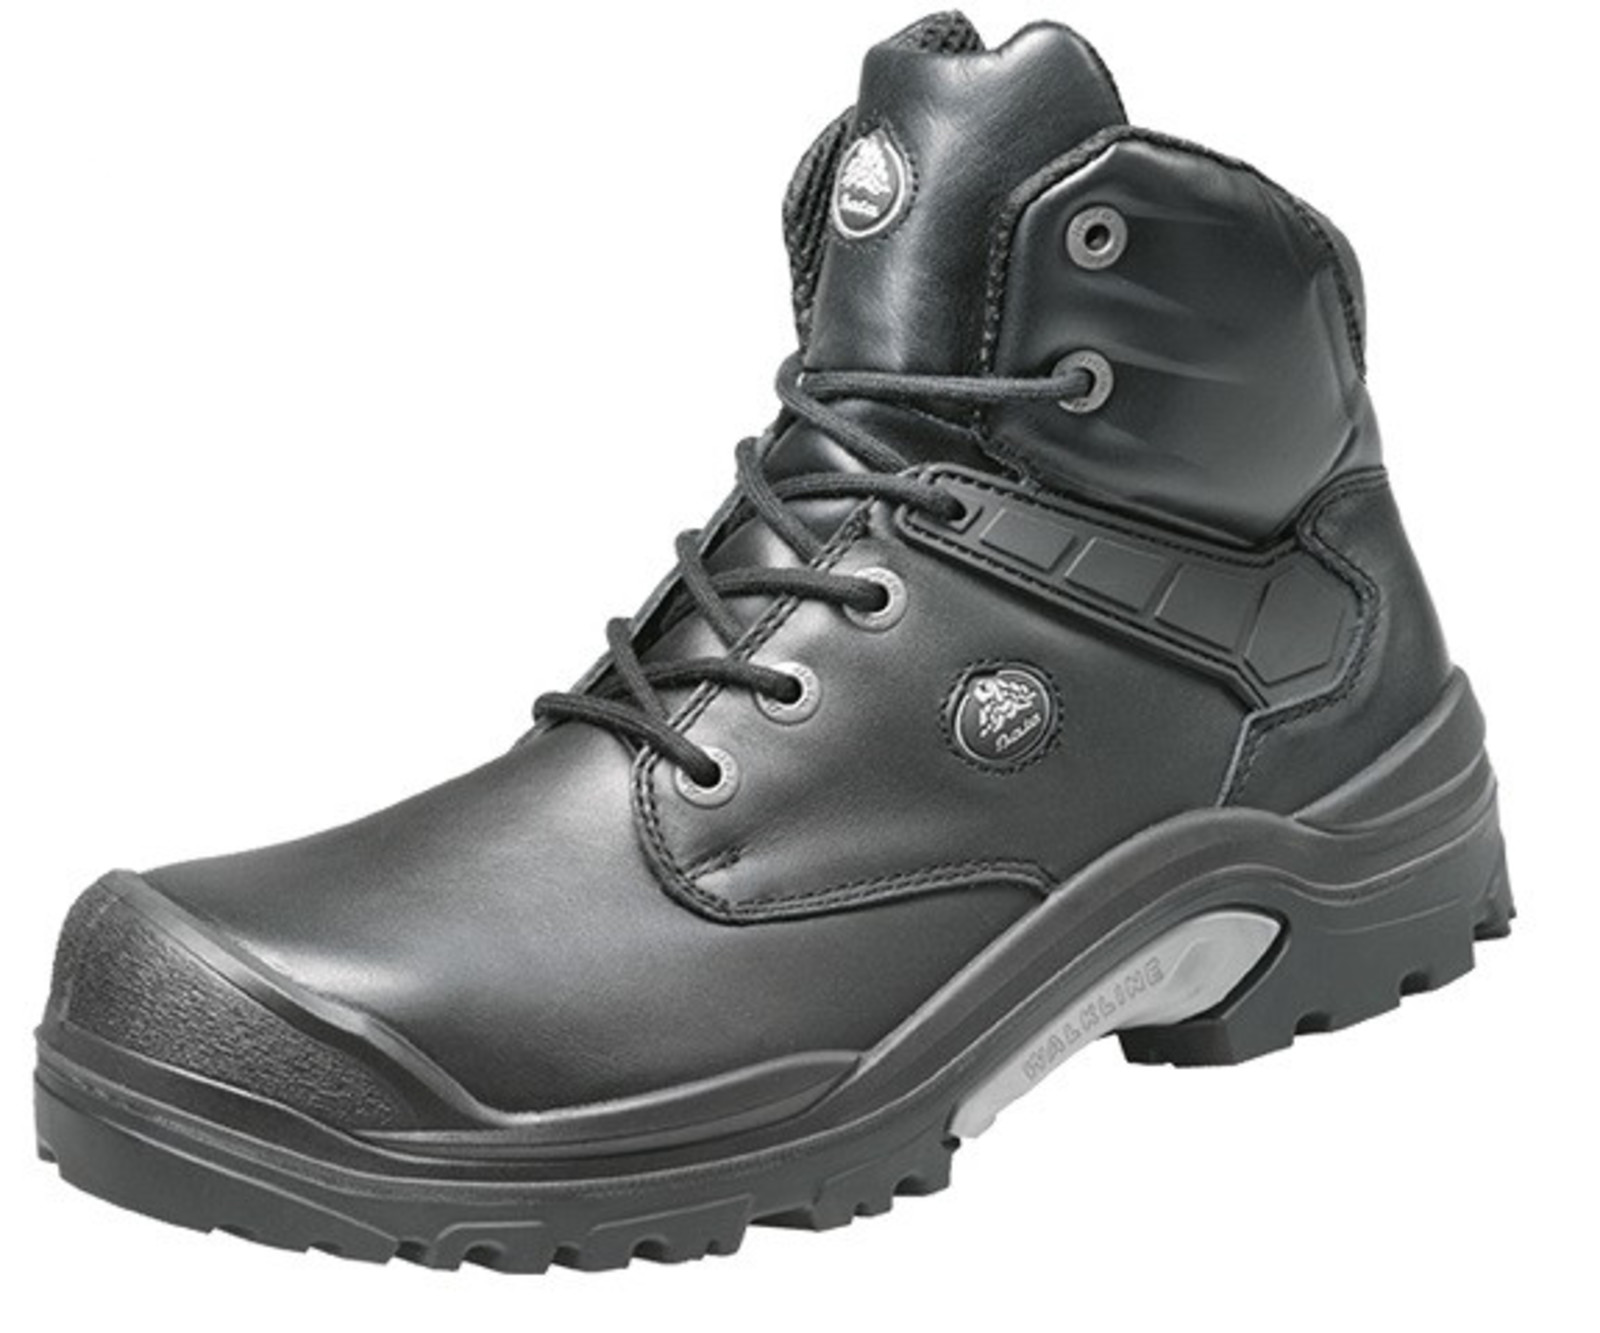 Bezpečnostná obuv Baťa PWR S3 - veľkosť: 43, farba: čierna